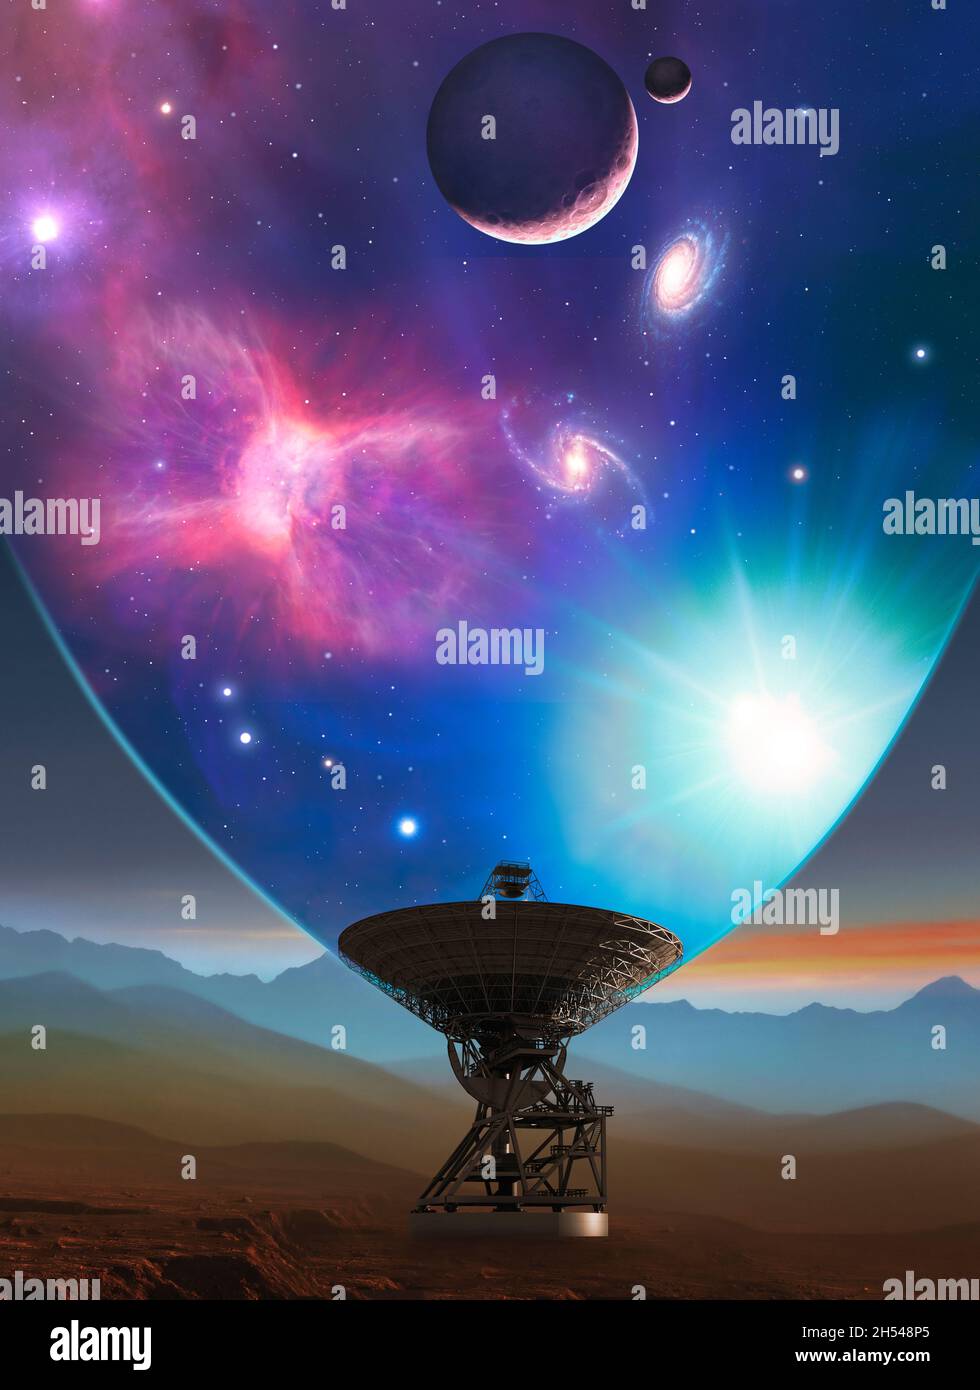 Telescopio viendo el universo, ilustración Foto de stock